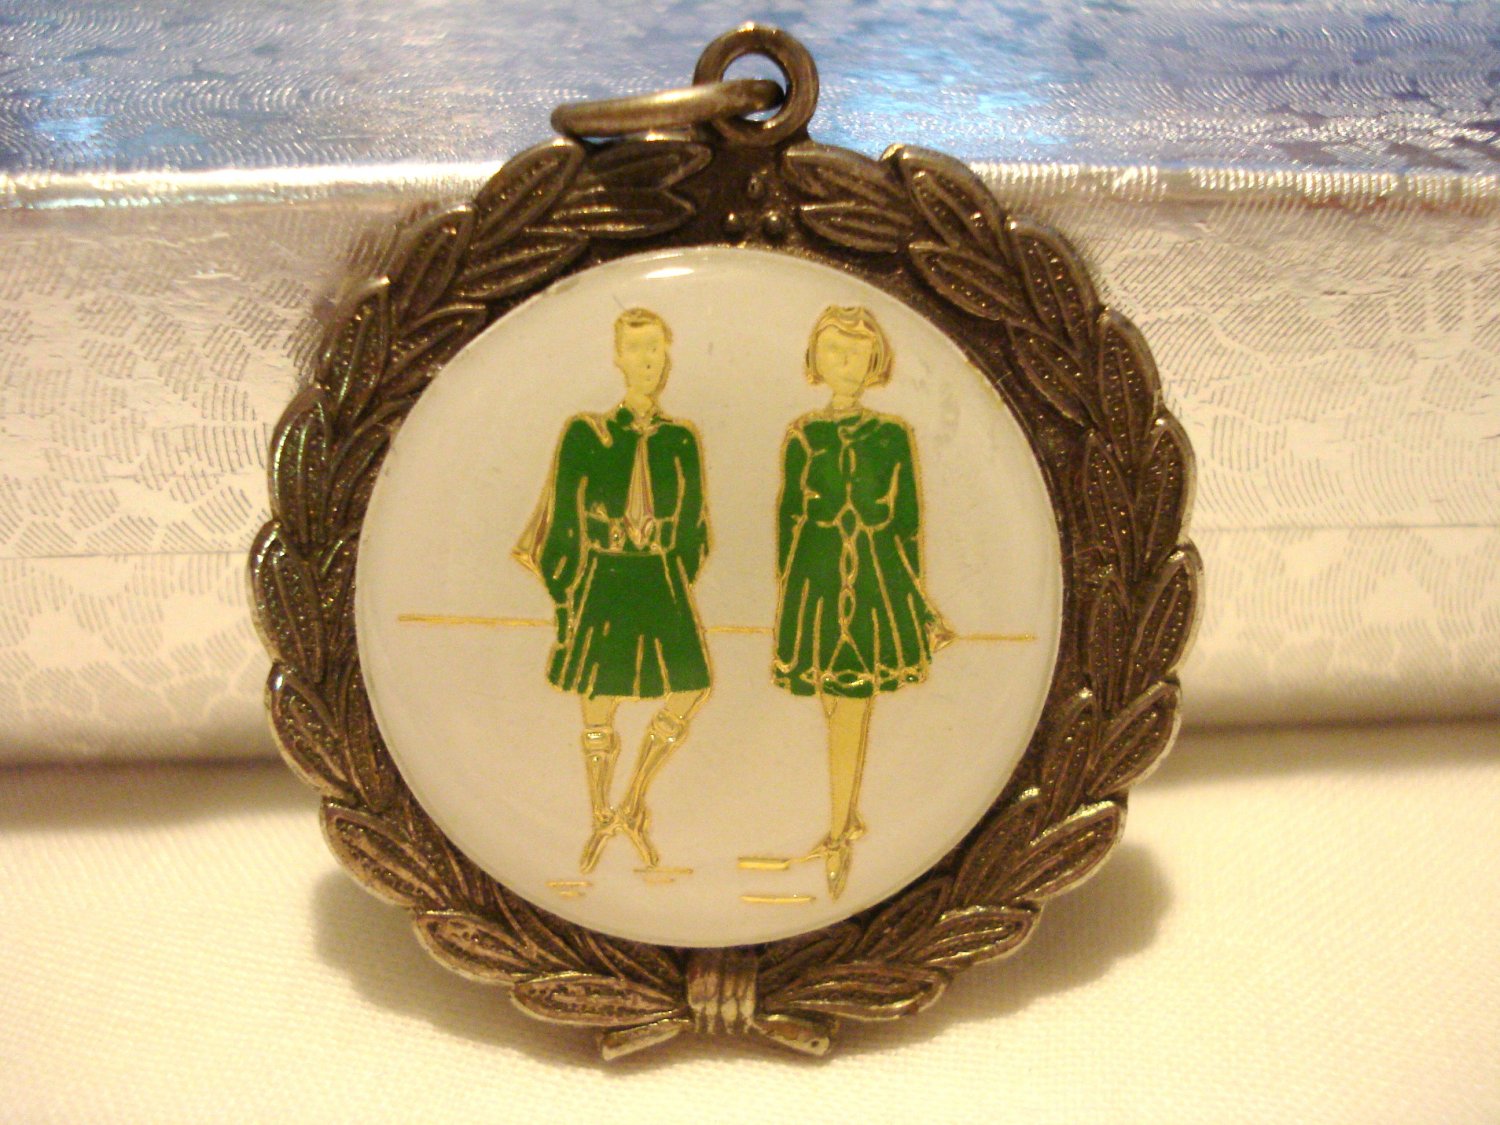  Laurel leaf pendant with plaque step dancers girl guides vintage ll3133